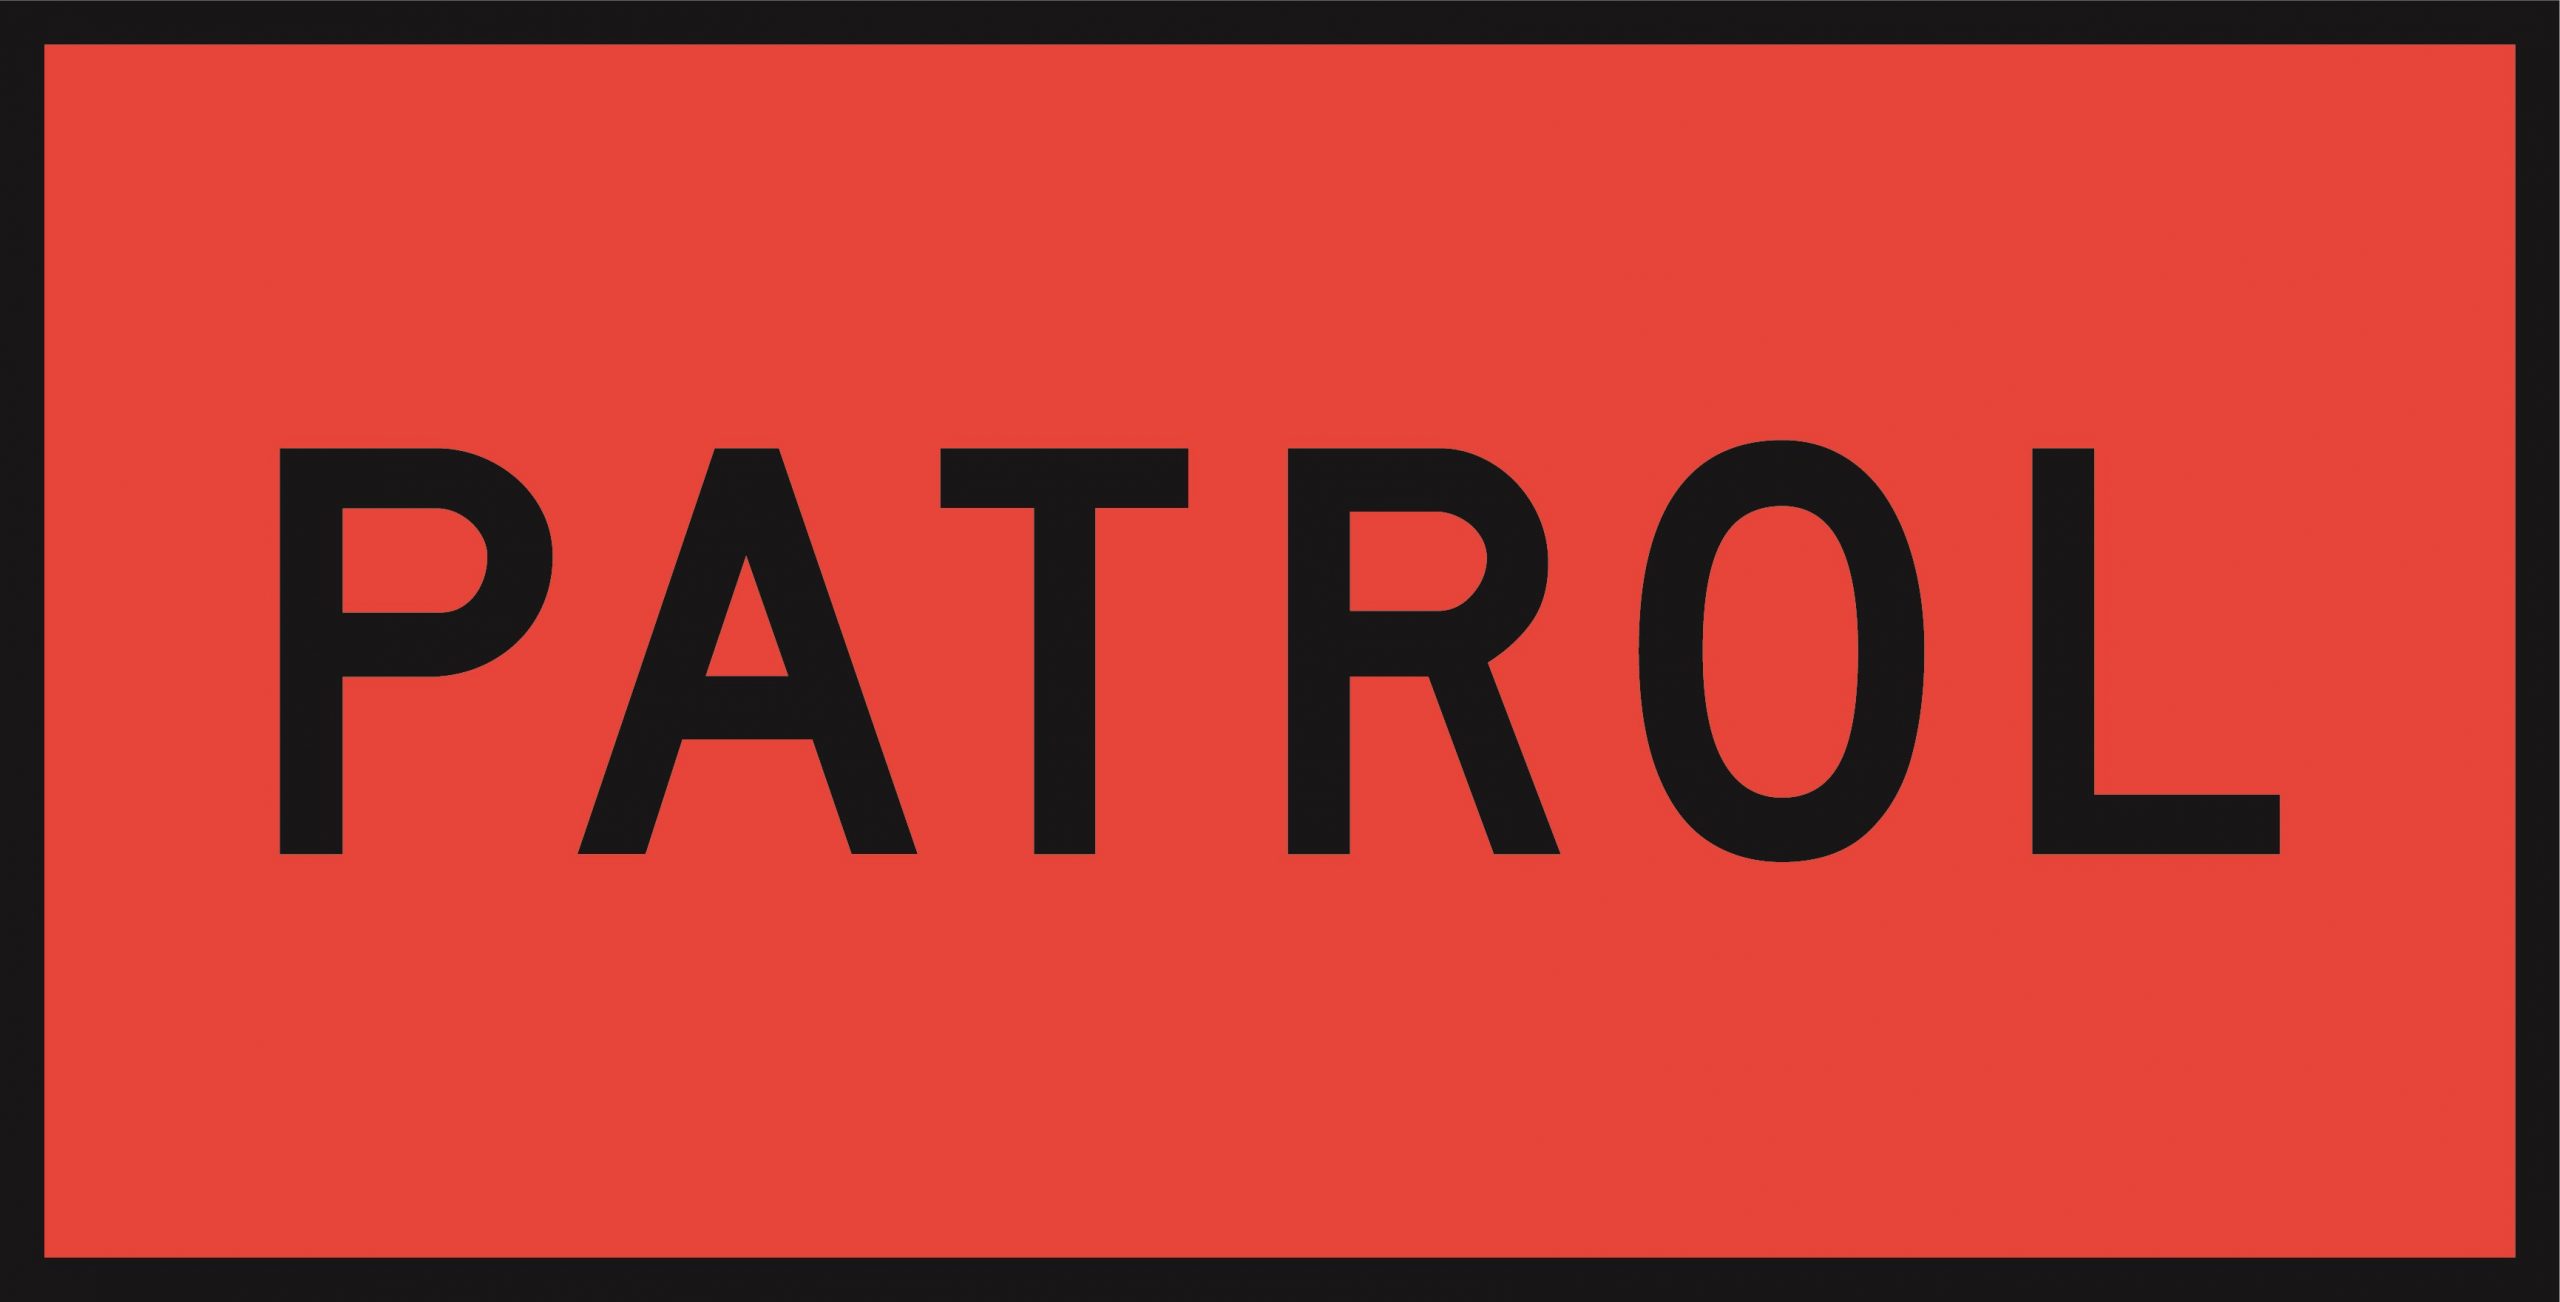 Patrol (DG) 1200 x 600